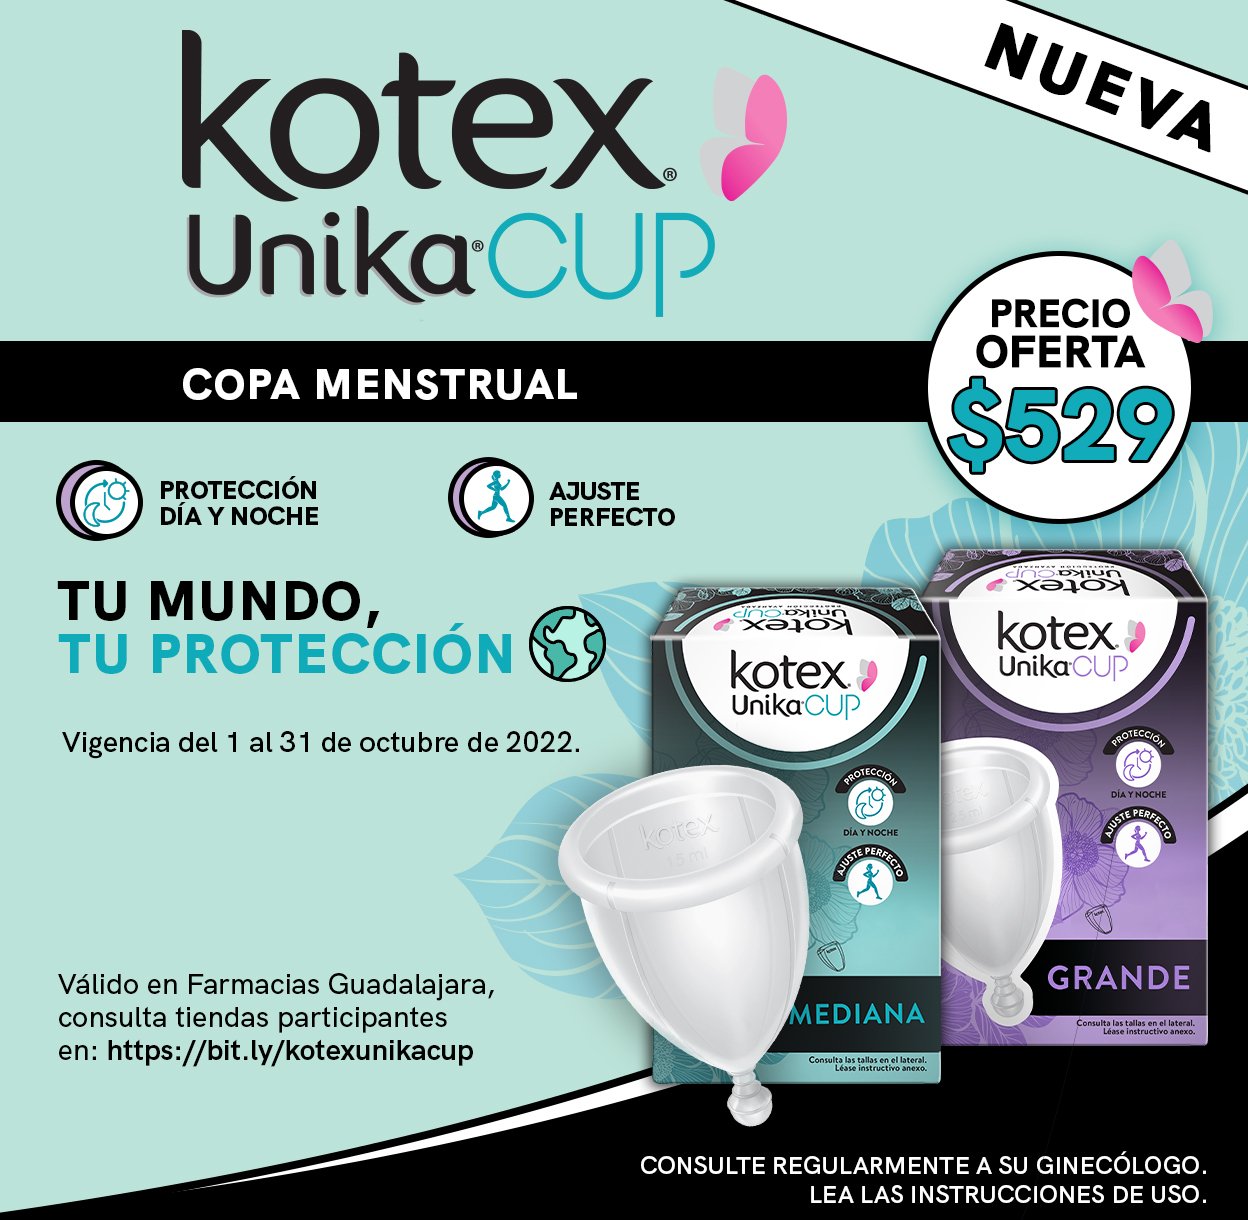 Kotex Unika Cup a precio especial